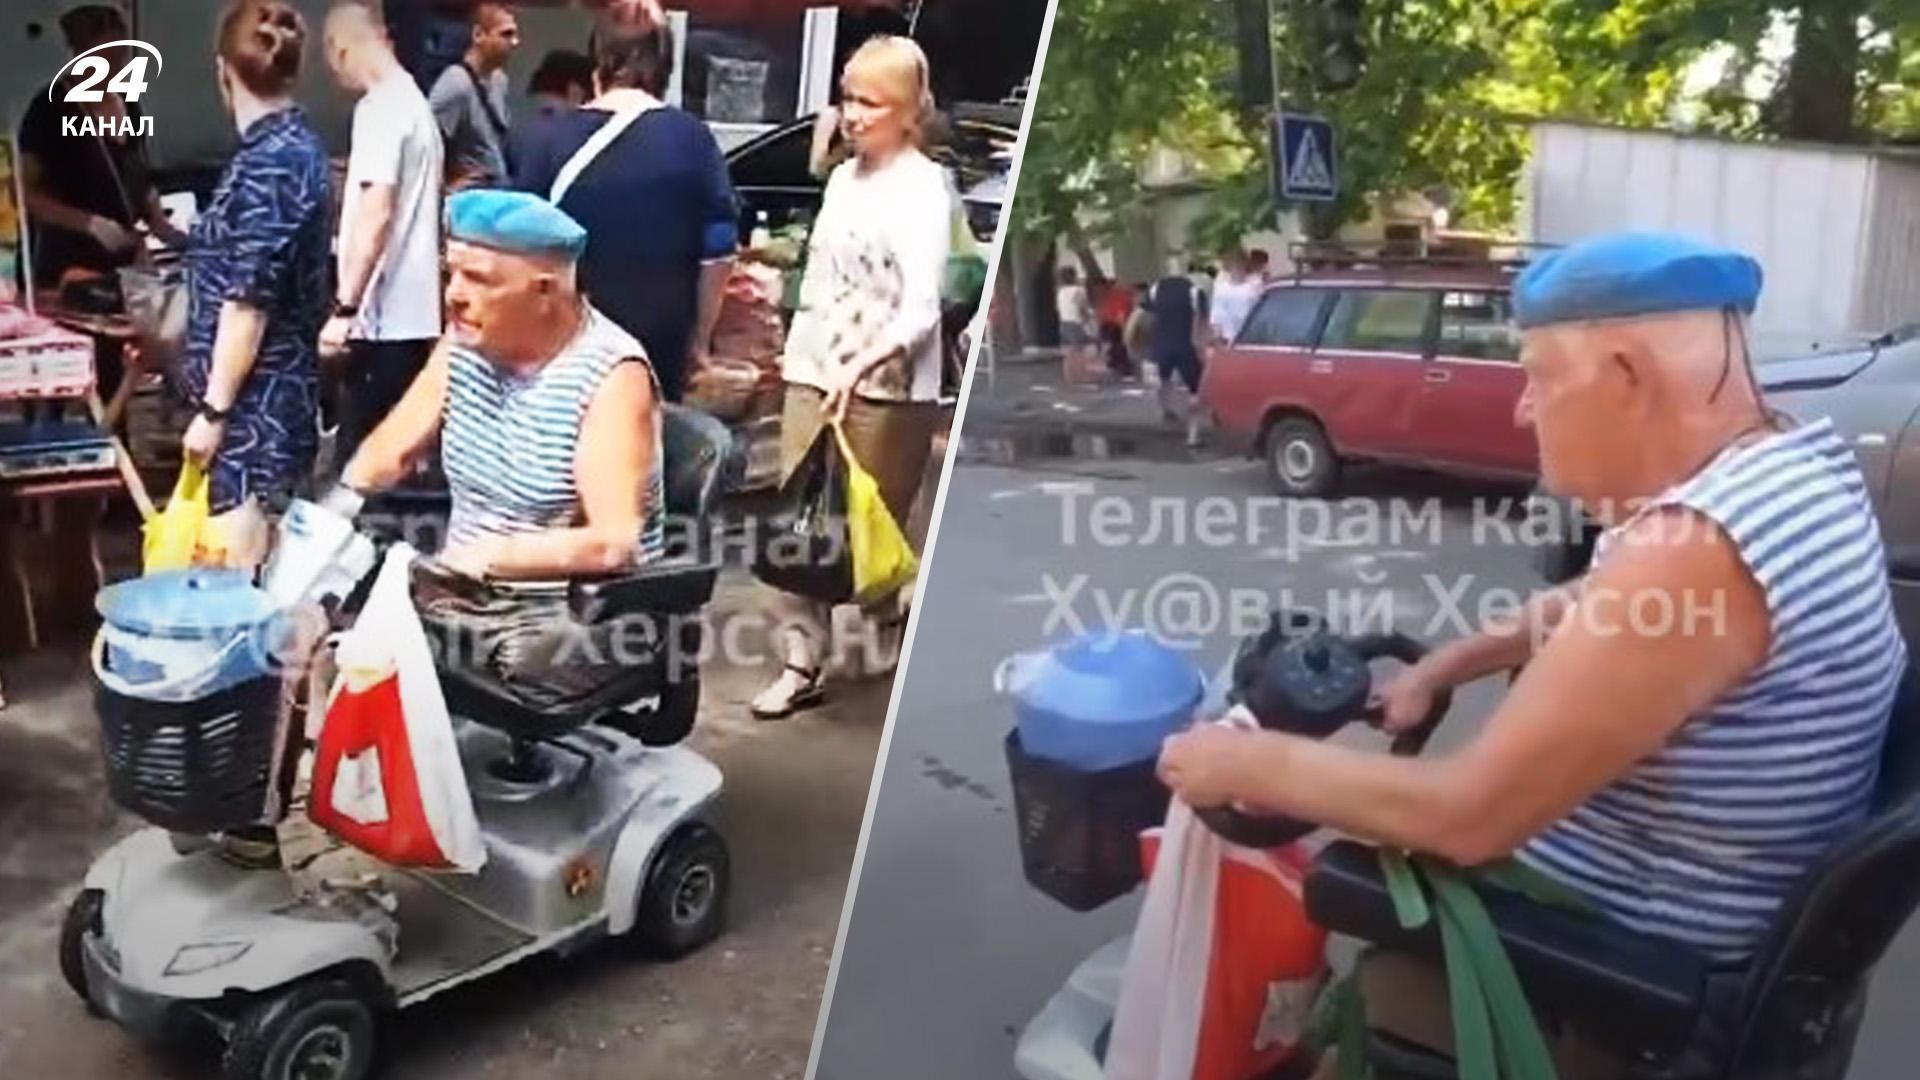 Пенсионер на мотоколяске в Херсоне громко включает украинские песни, не боясь оккупантов